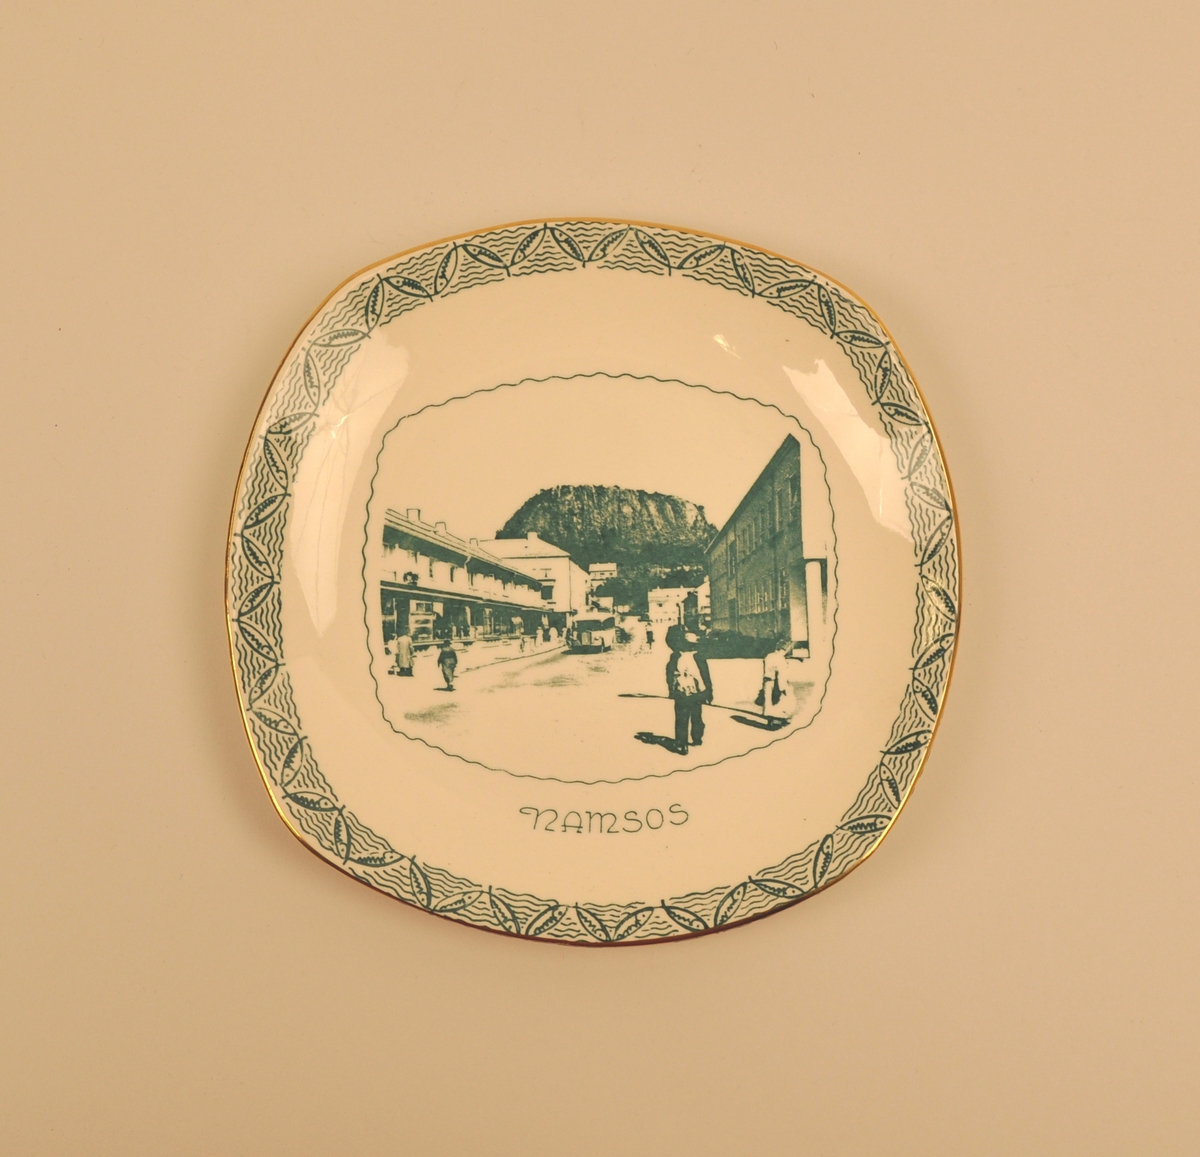 Motivet er eit utsnitt frå eit foto eller postkort som viser Havnegata i Namsos med byfjellet Bjørumsklompen i bakgrunnen. Kanten av fatet er dekorert med stiliserte fiskar satt saman som eit  sikk-sakkband med små bylgjer imellom